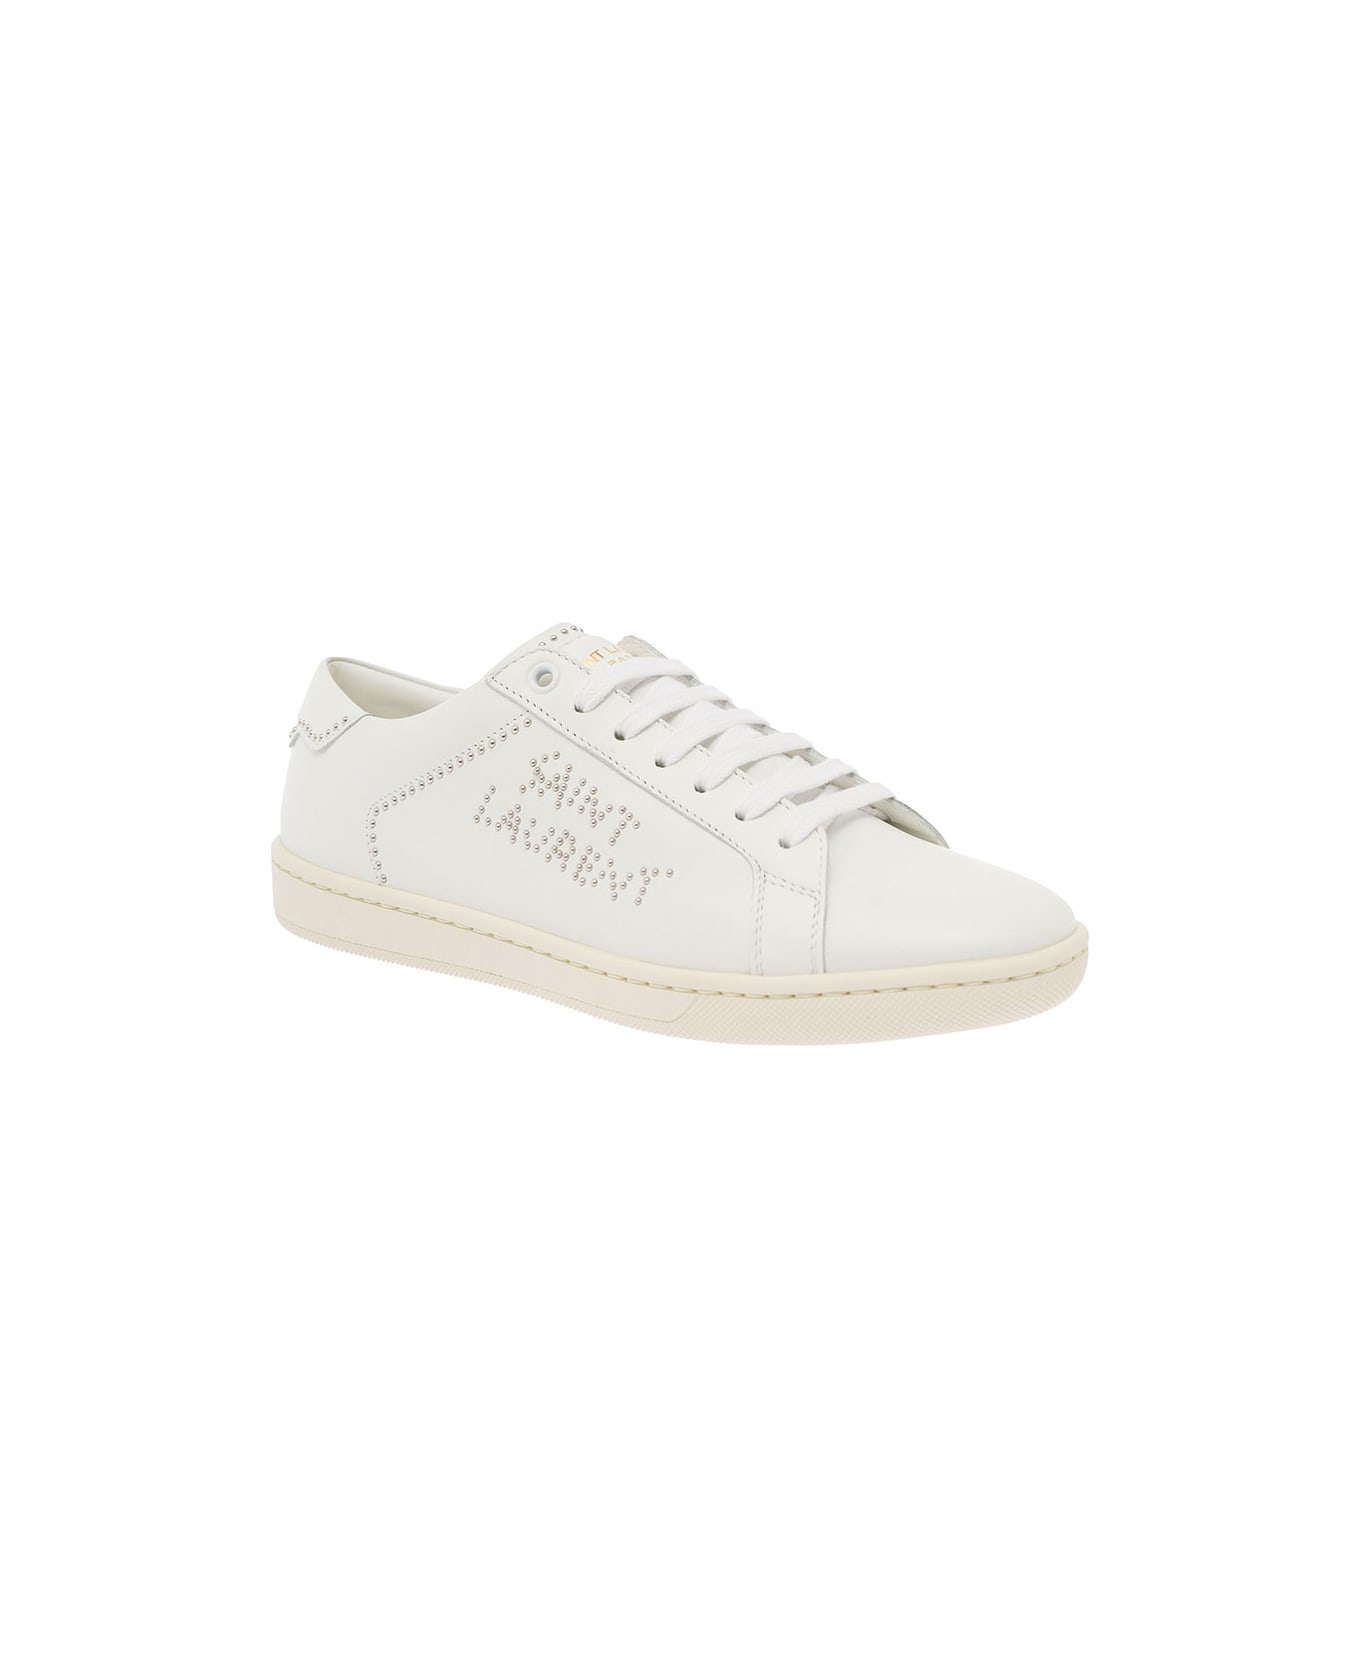 Saint Laurent White Sneakers - White スニーカー